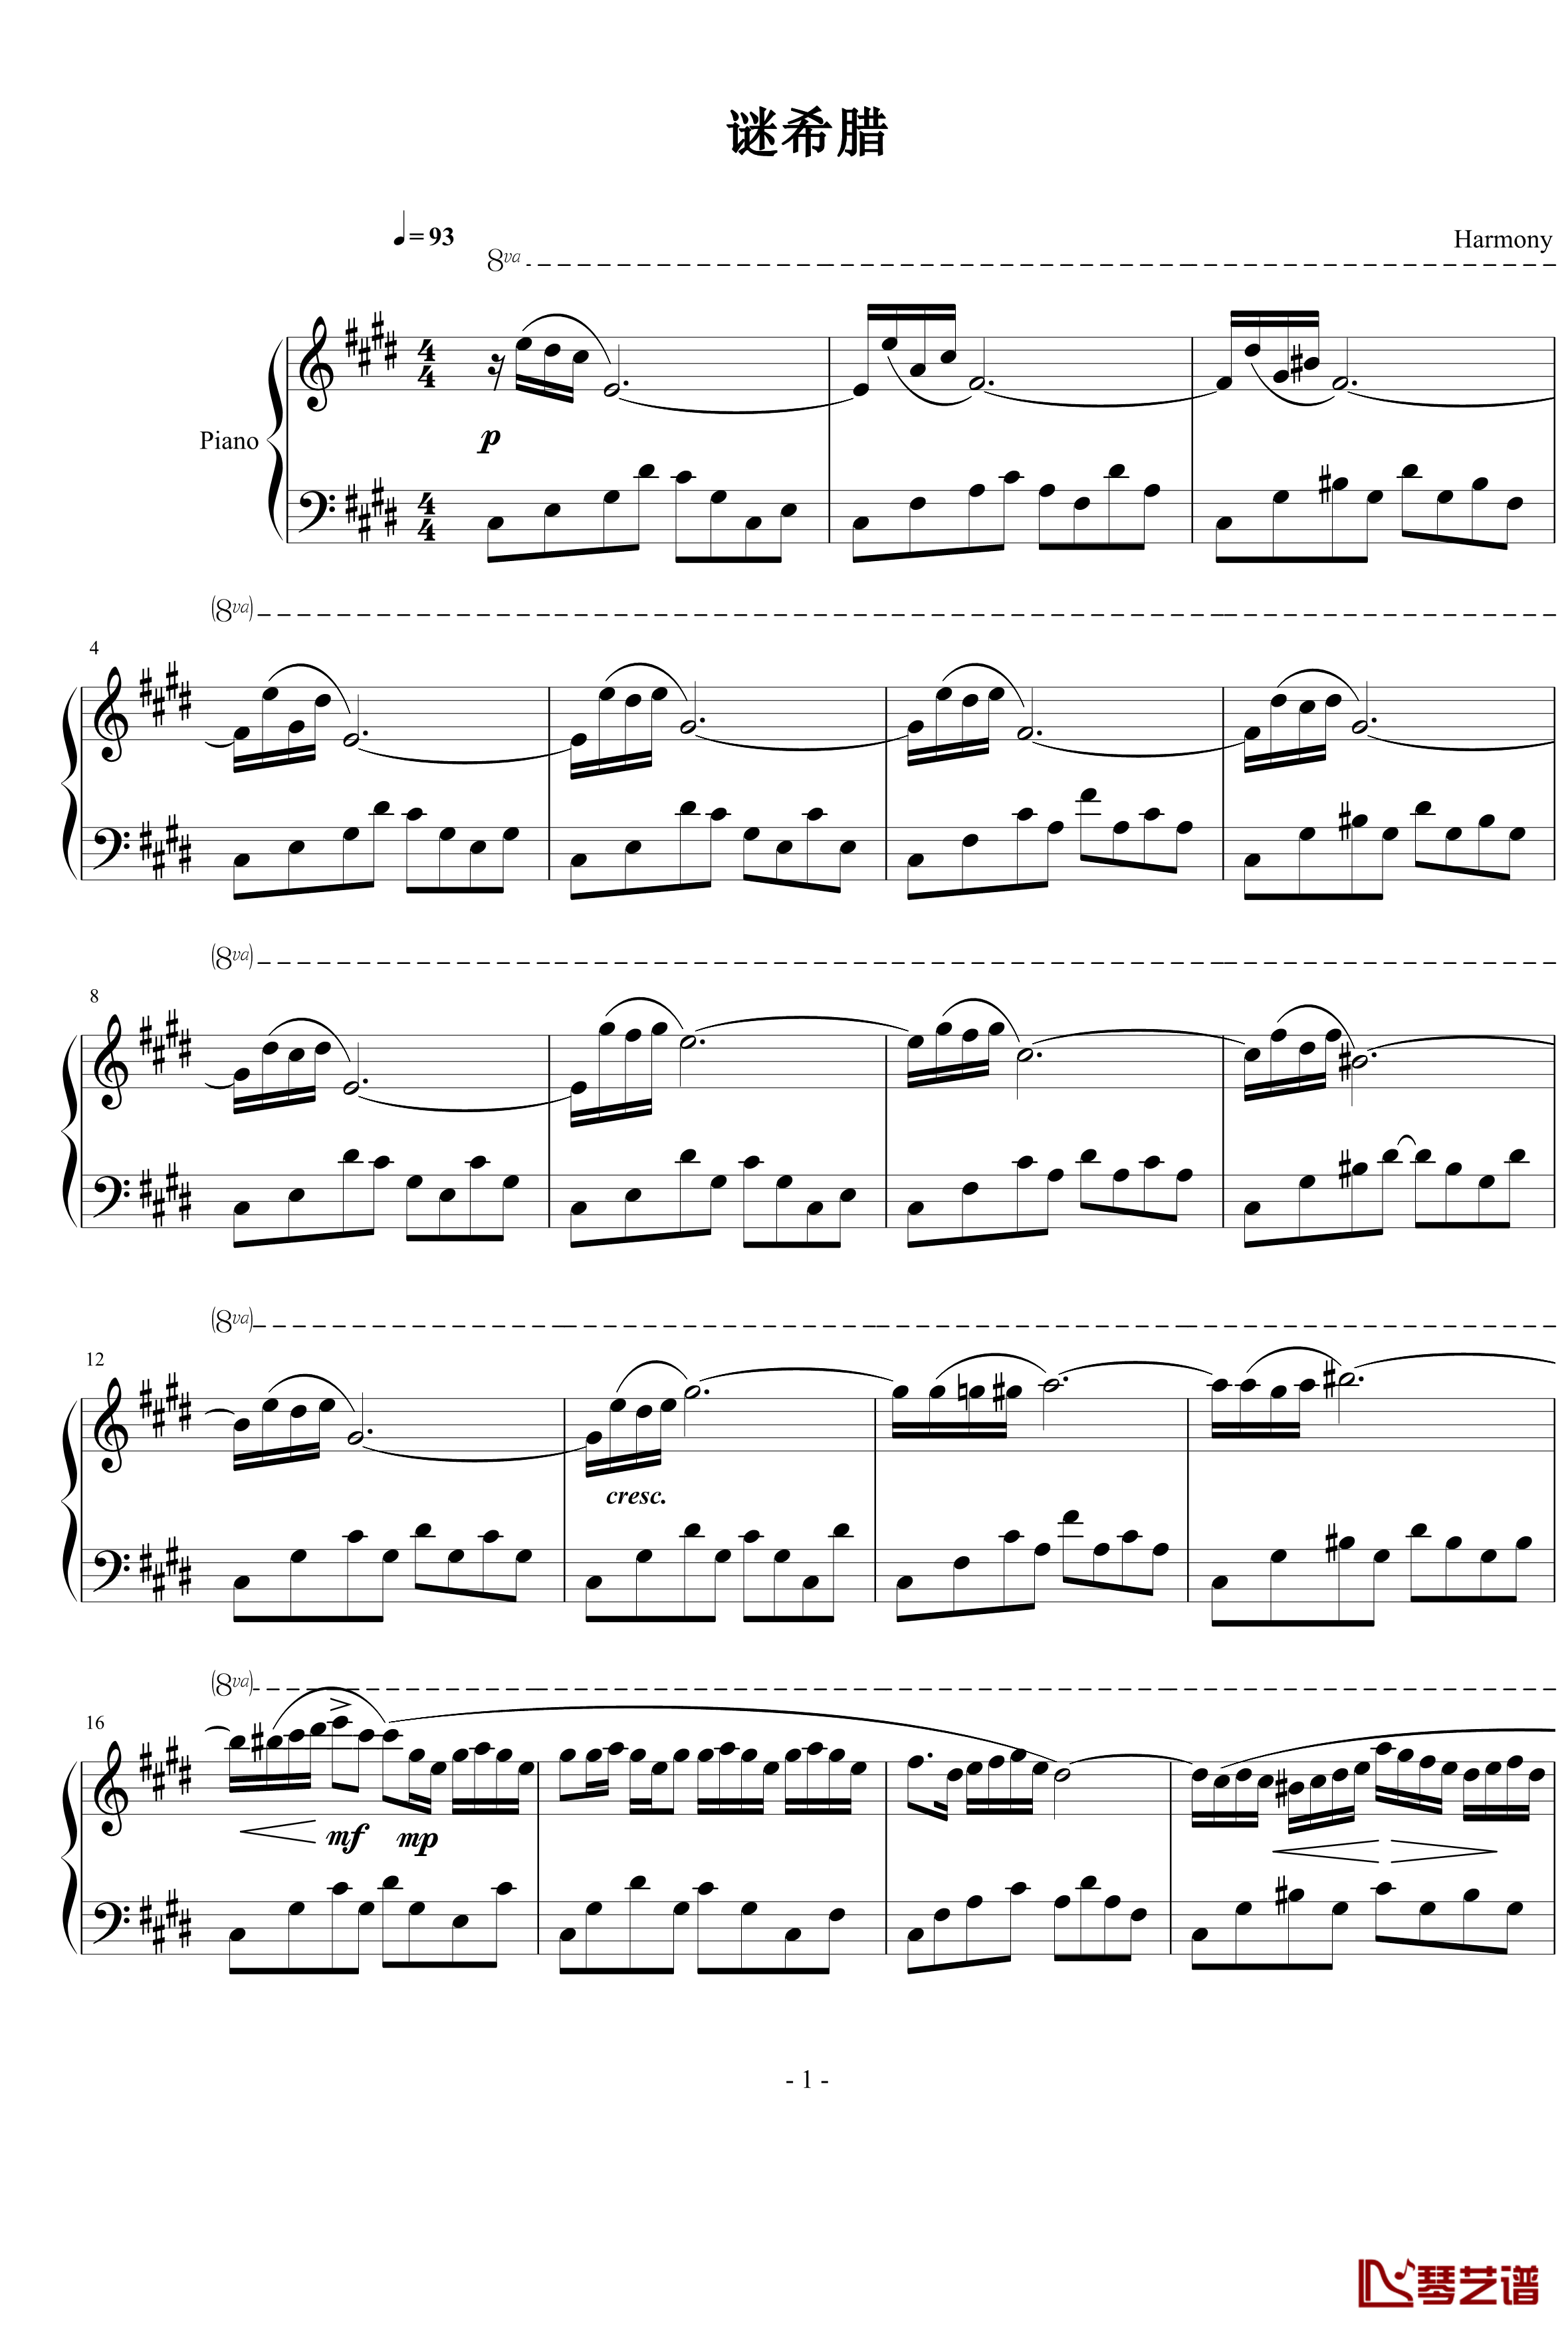 谜希腊钢琴谱-harmonypiano1